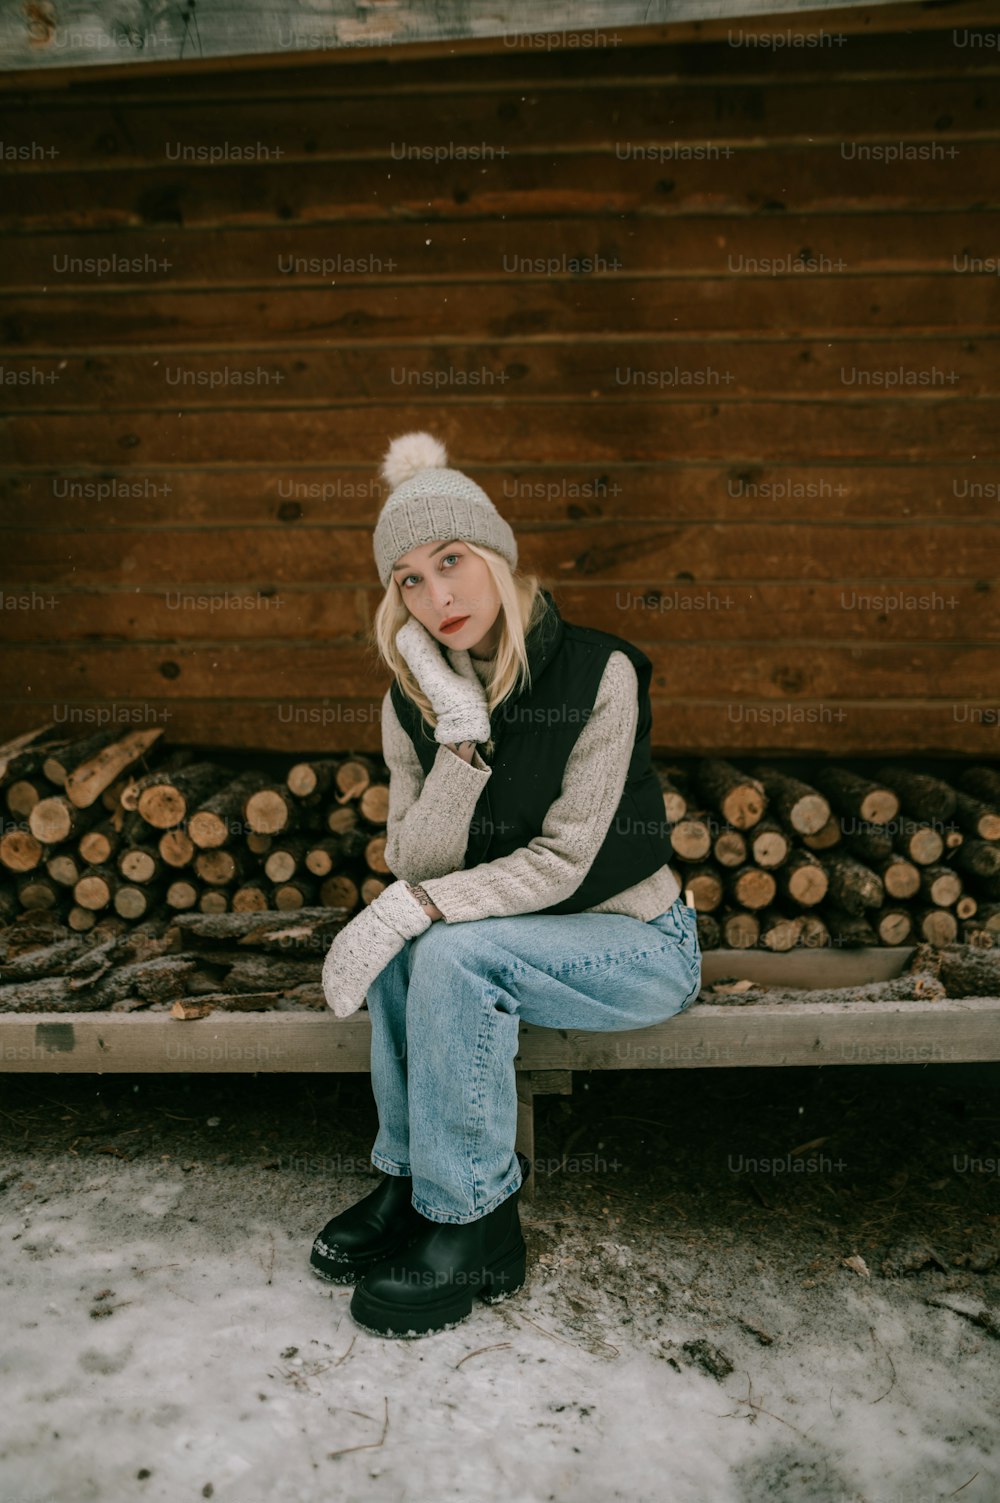 Una mujer sentada en un banco frente a una pila de troncos